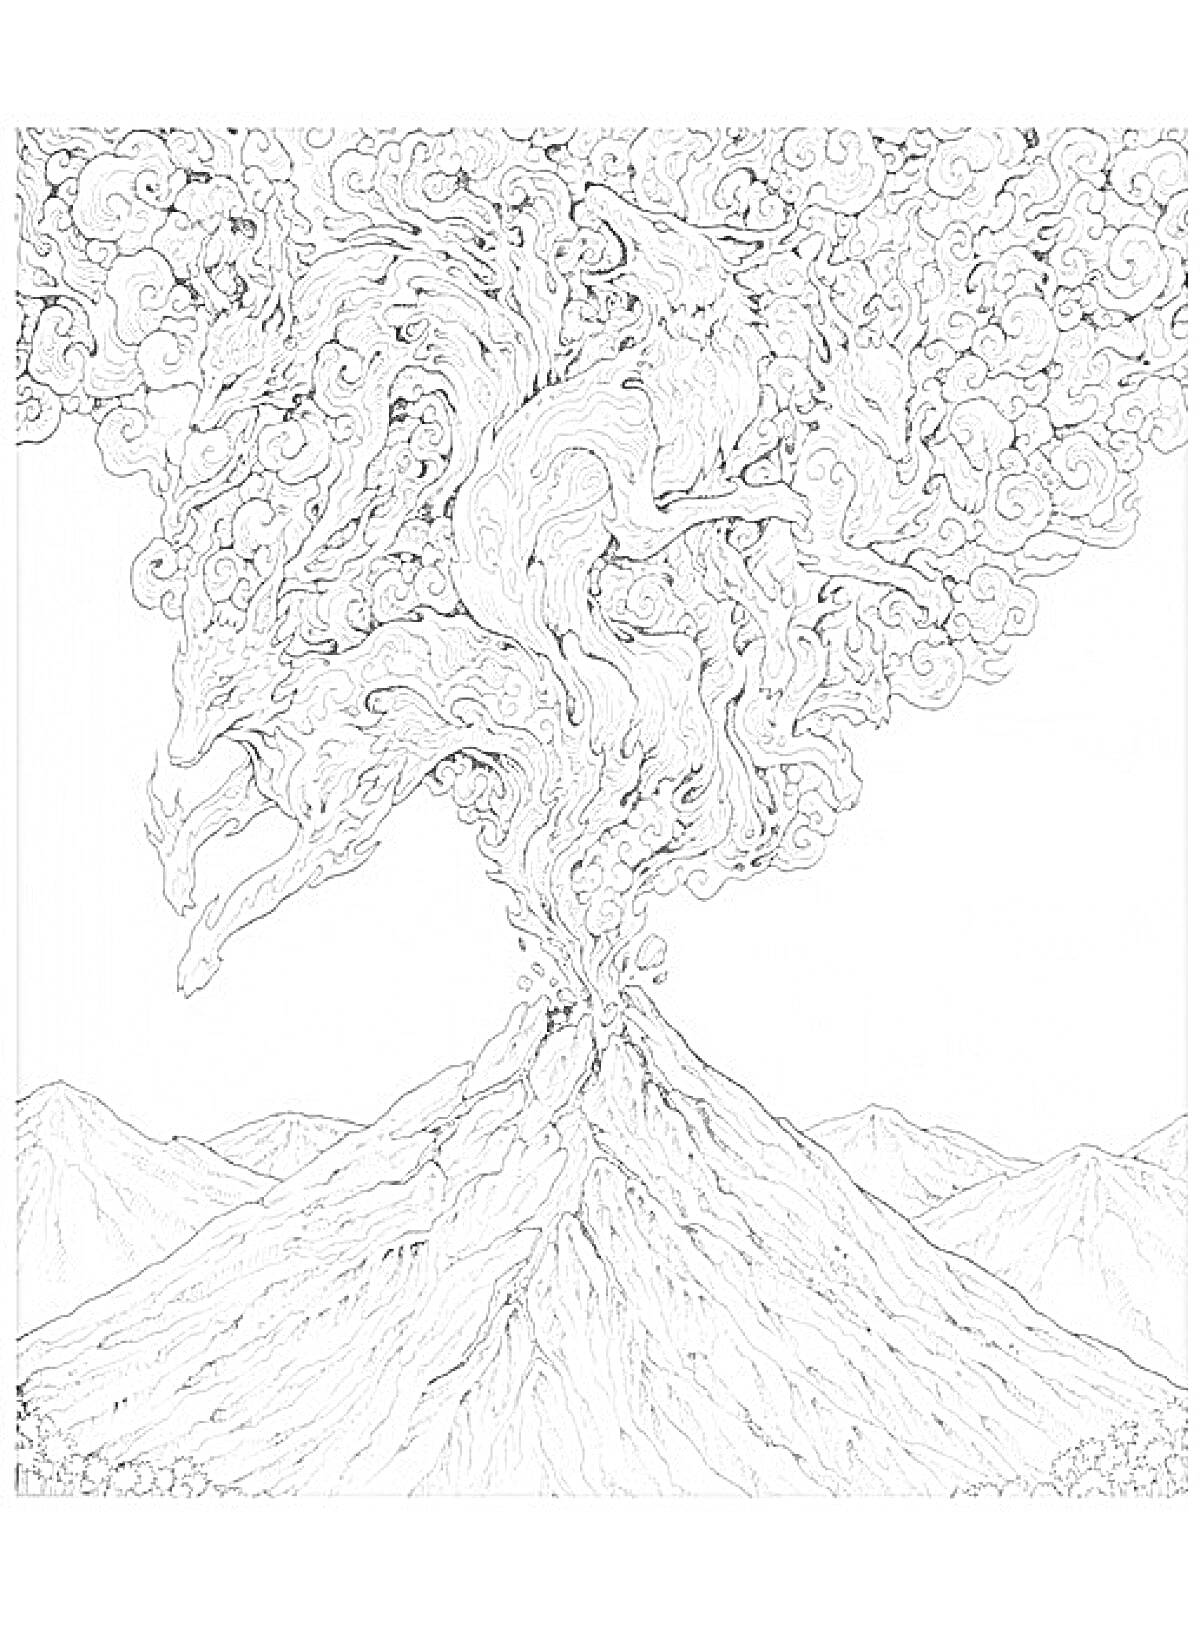 Извержение вулкана с фигурами животных в облаке дыма на фоне гор